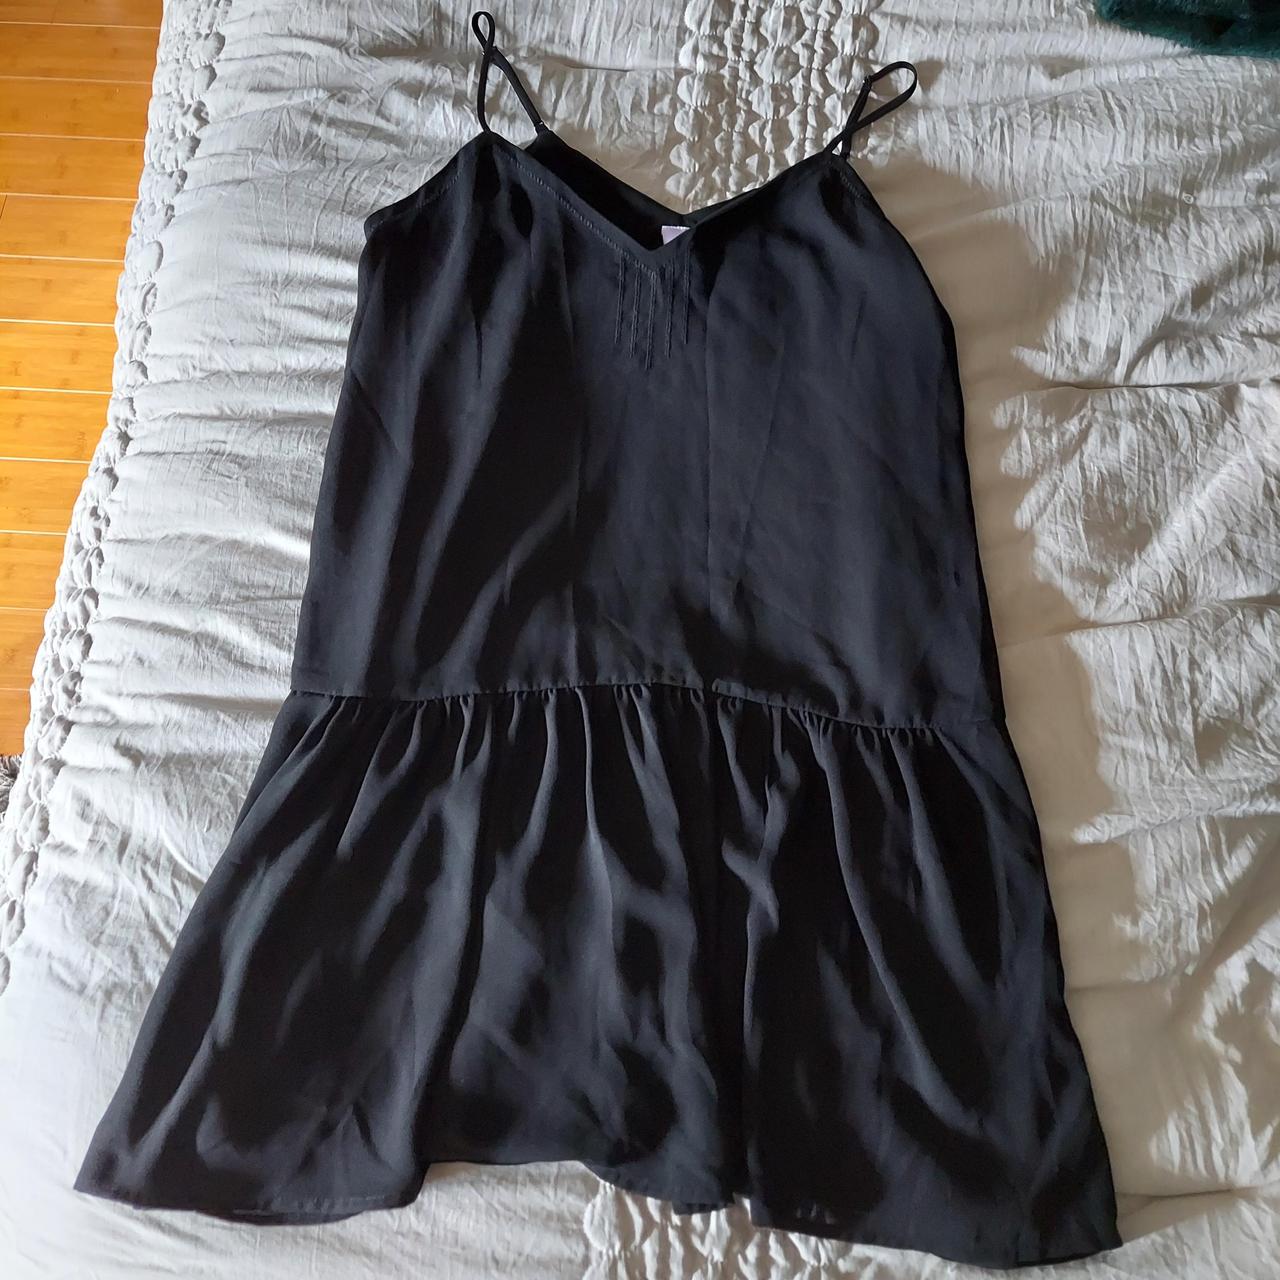 Black slip dress from Francesca's. Size-M. Super... - Depop